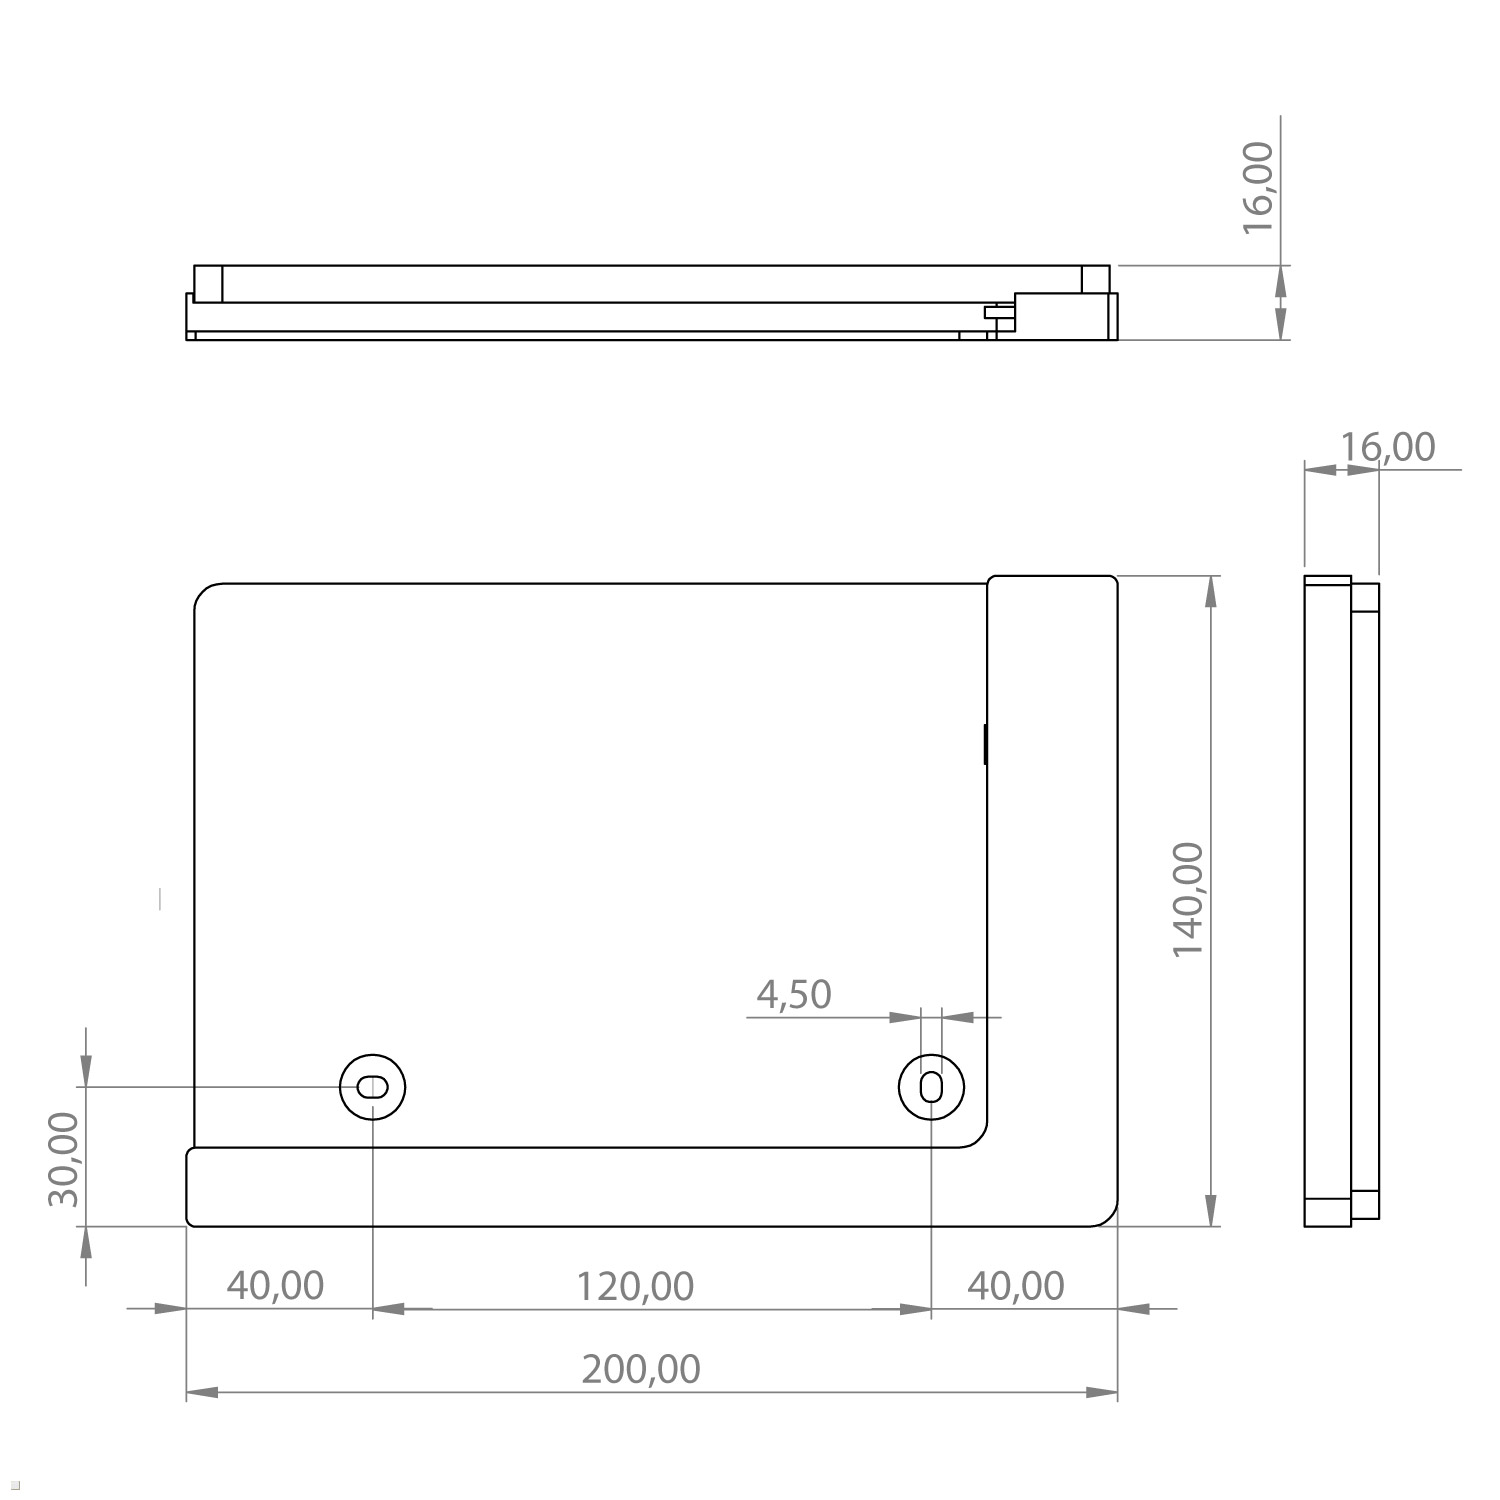 TABLINES TWP Tablethalter mit schwarz Ladefunktion Tab Tablet für Wandhalterung, S7+ 12.4 Samsung